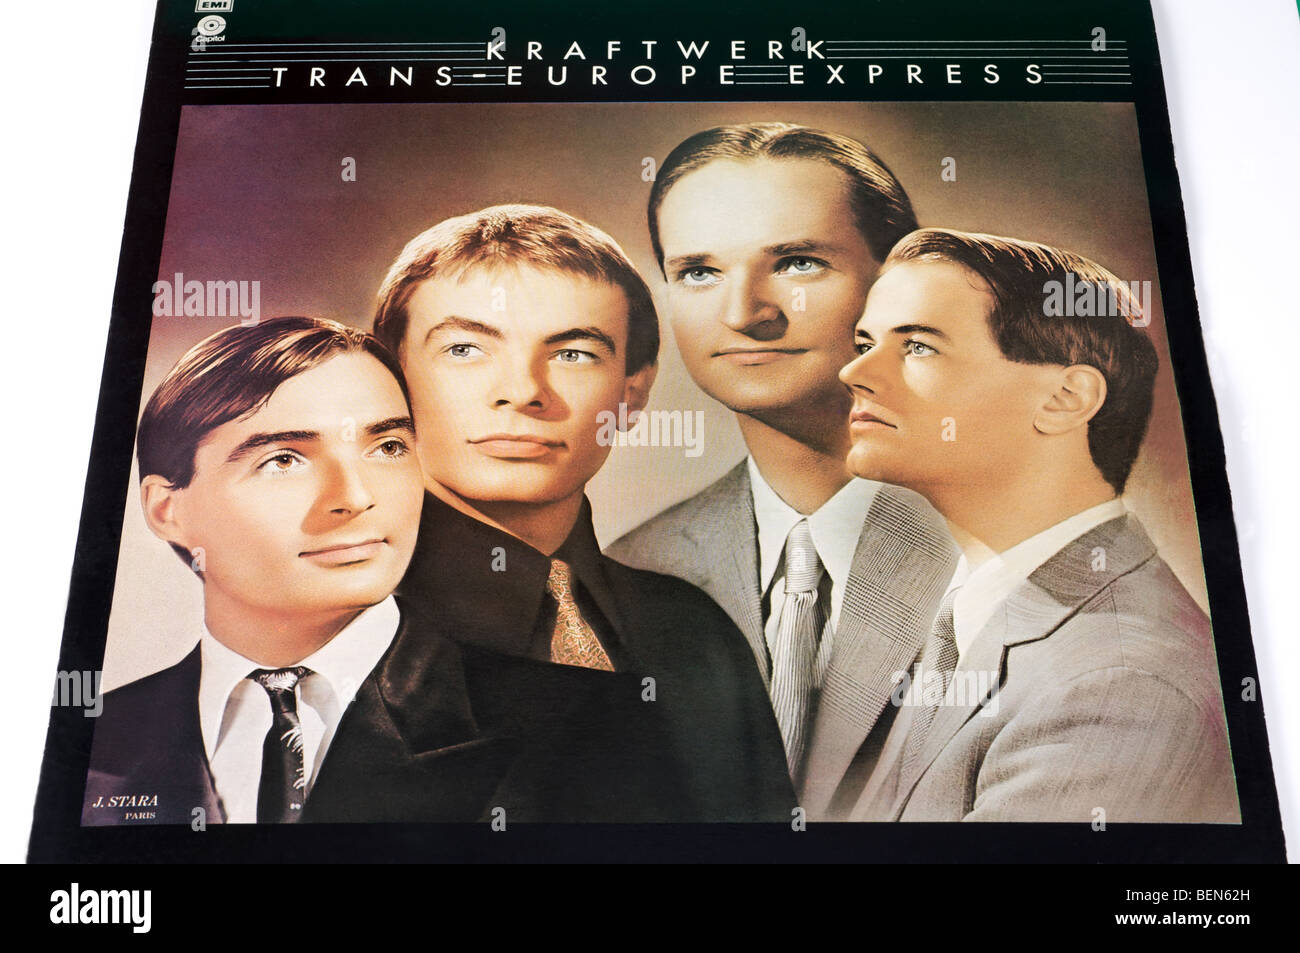 Couverture de l'album TRANS Europe Express par le groupe pop allemand Kraftwerk Banque D'Images